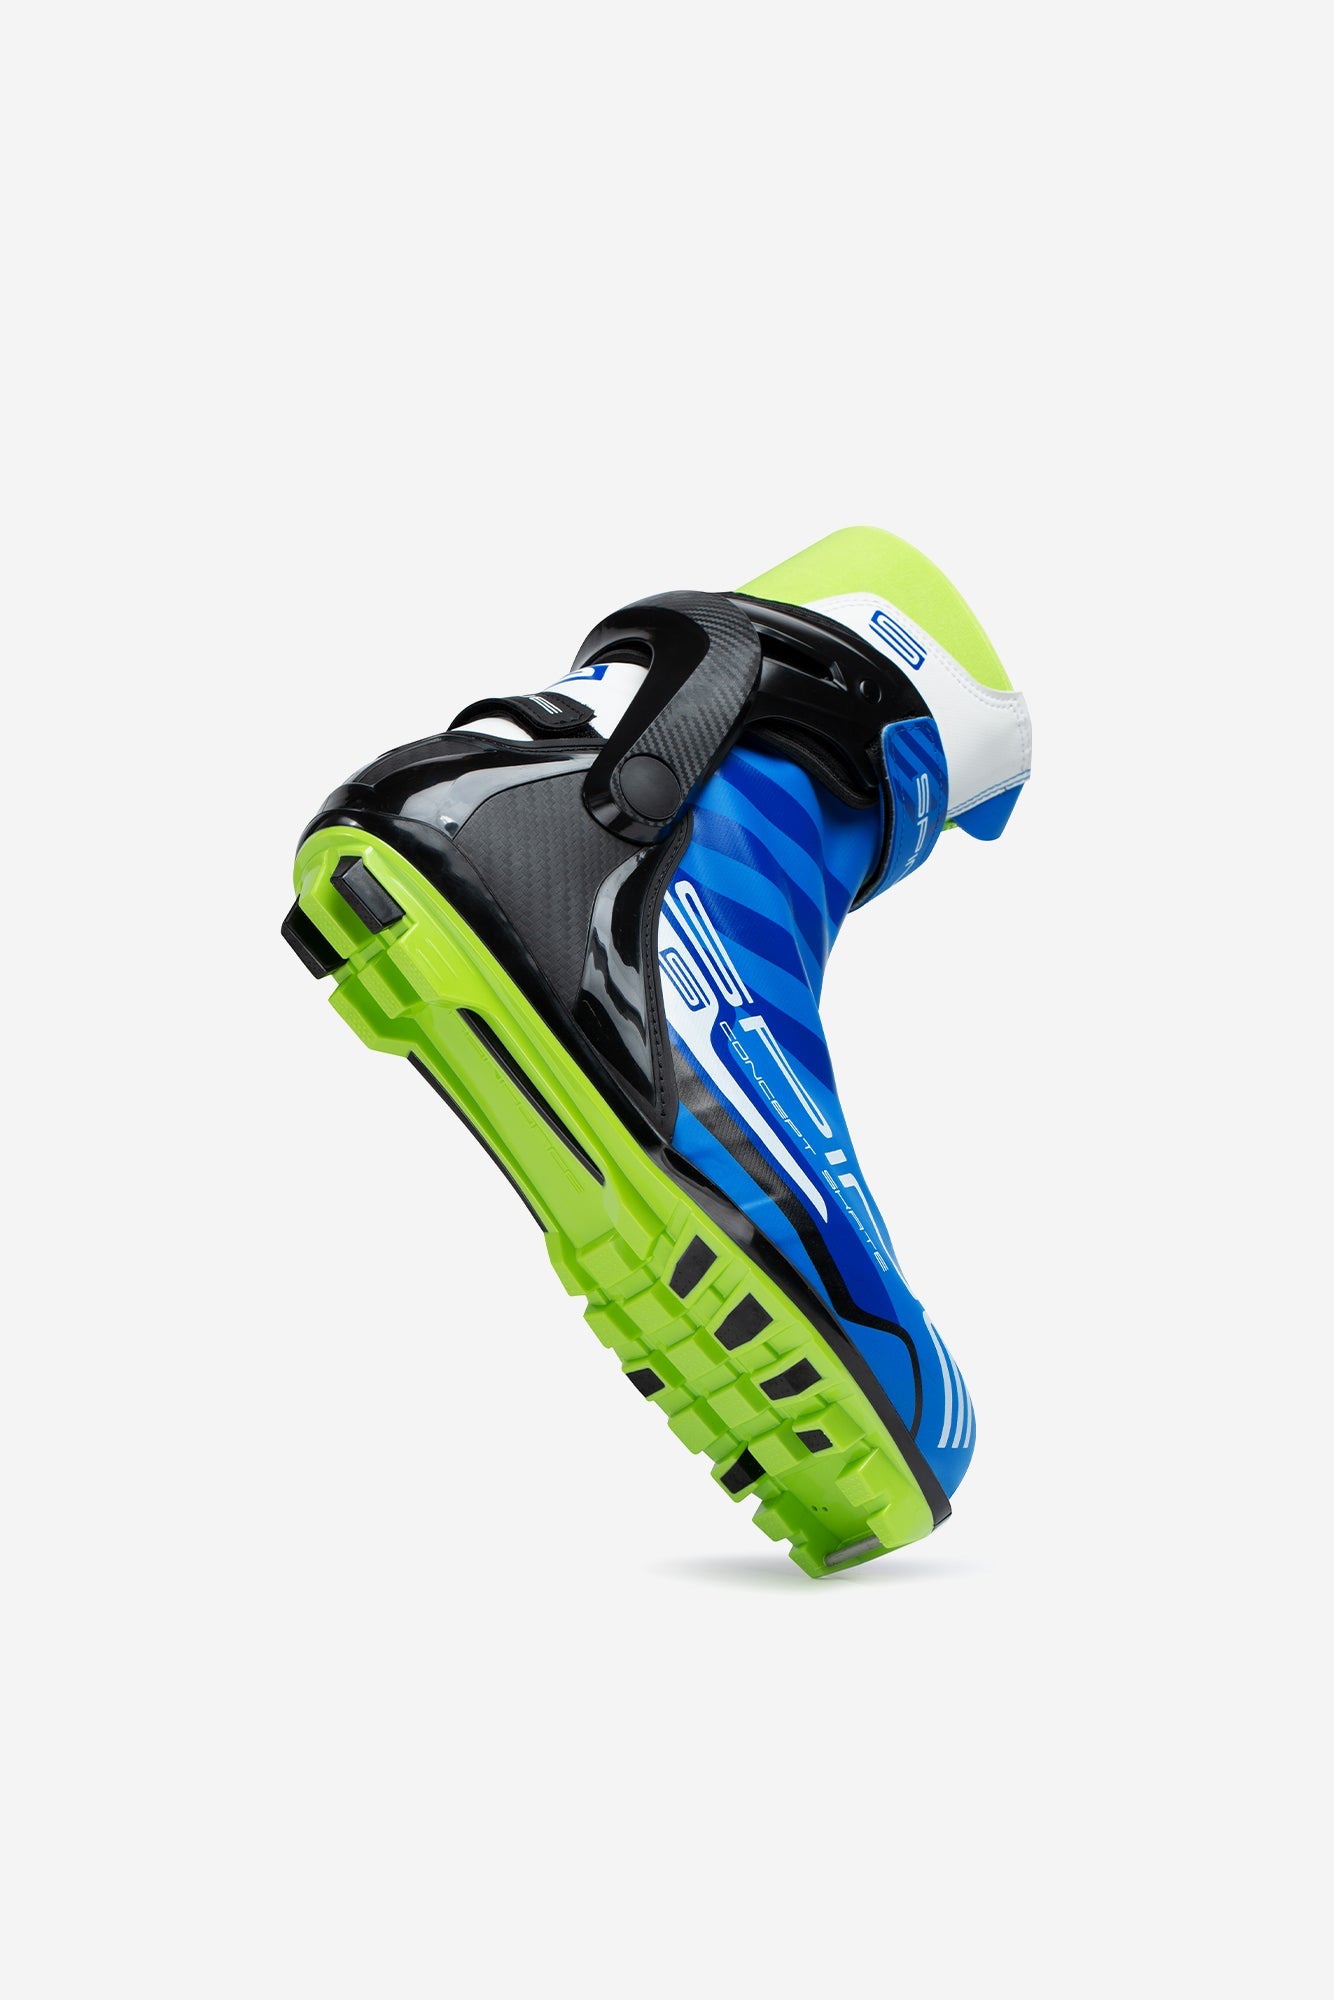 Concept Skate Pro 297 (NNN) Nordic Ski Boots Angle 1